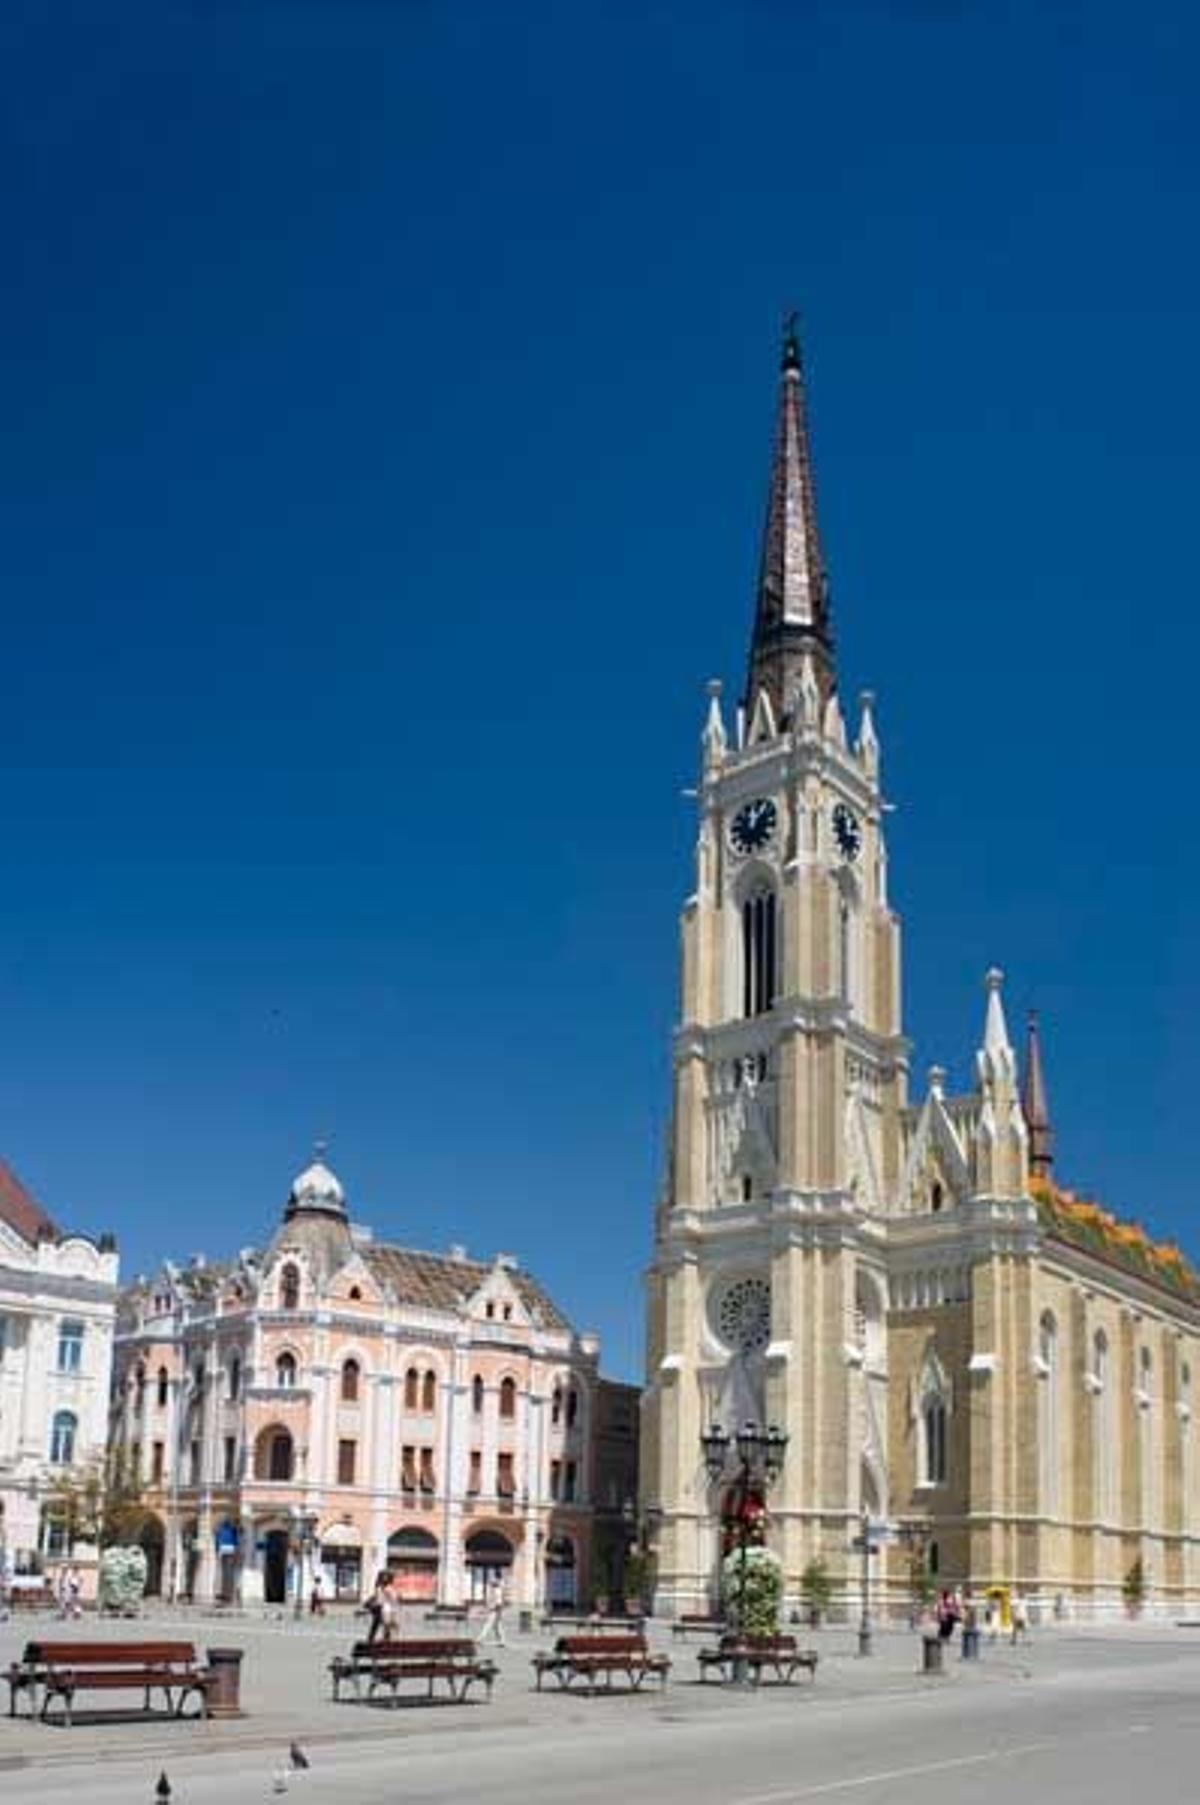 La Catedral católica de Novi Sad data de principios del siglo XVIII y es de estilo gótico. Su torre mide 52 metros de altura.